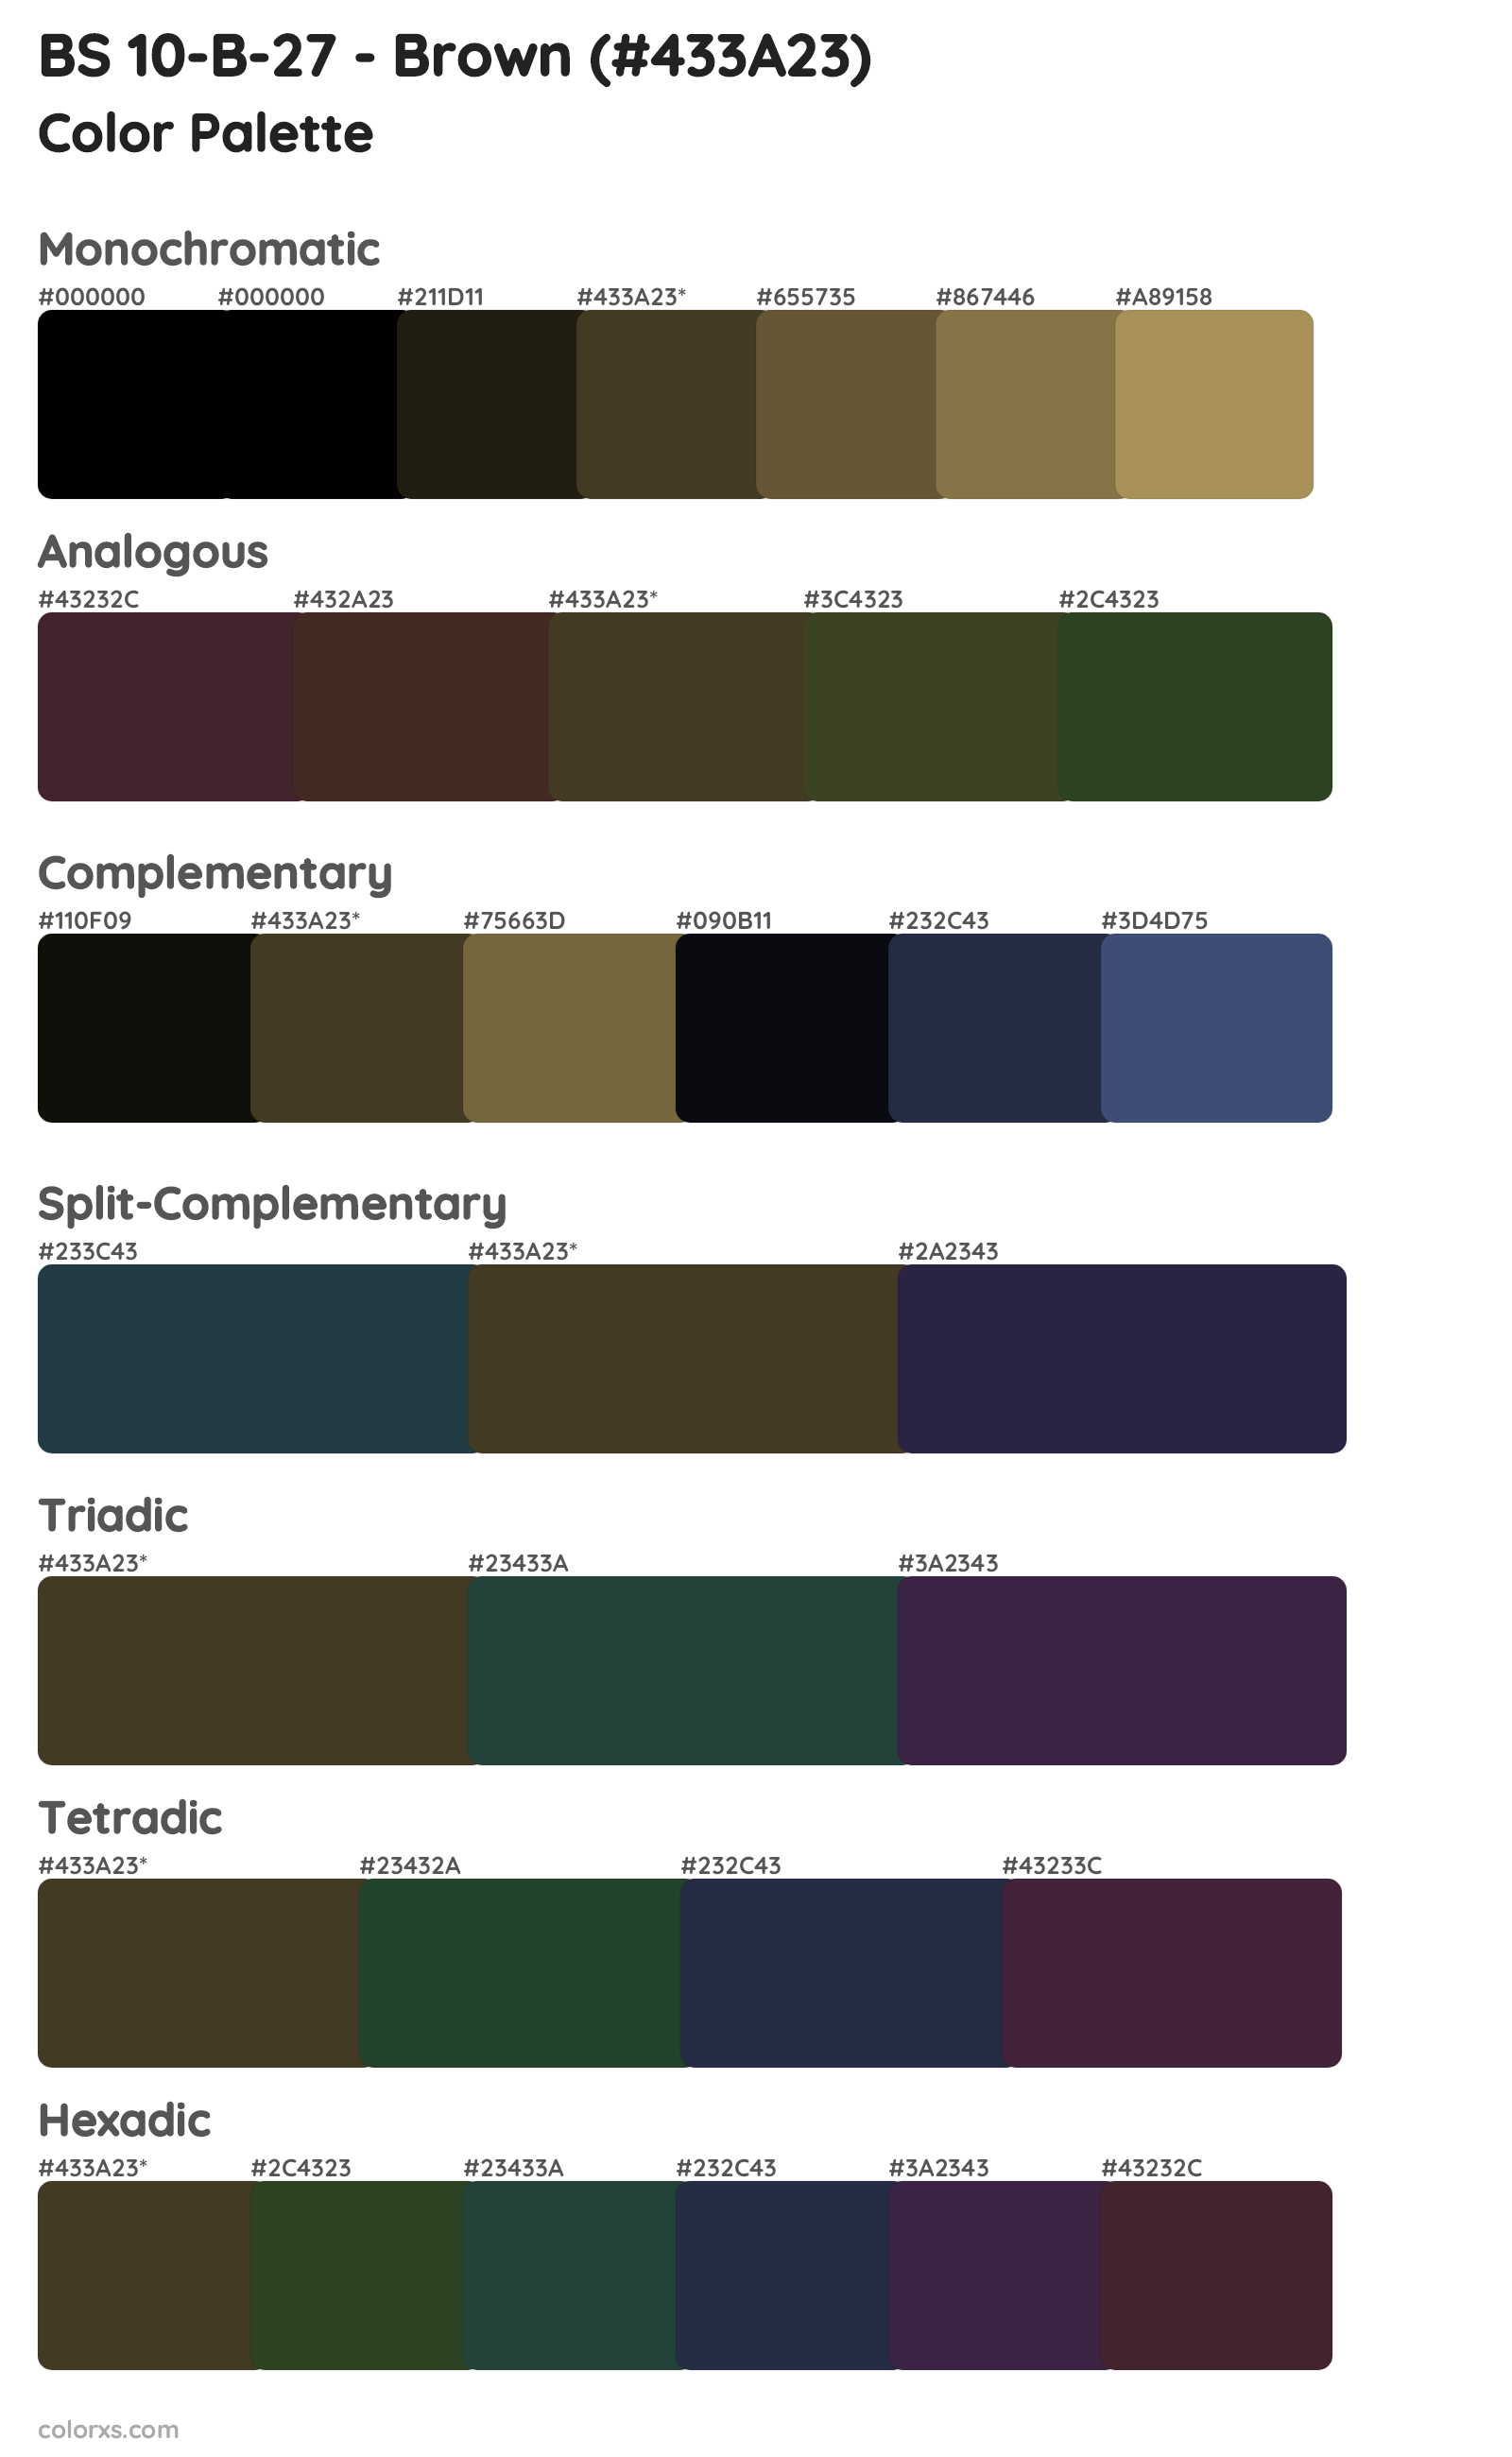 BS 10-B-27 - Brown Color Scheme Palettes